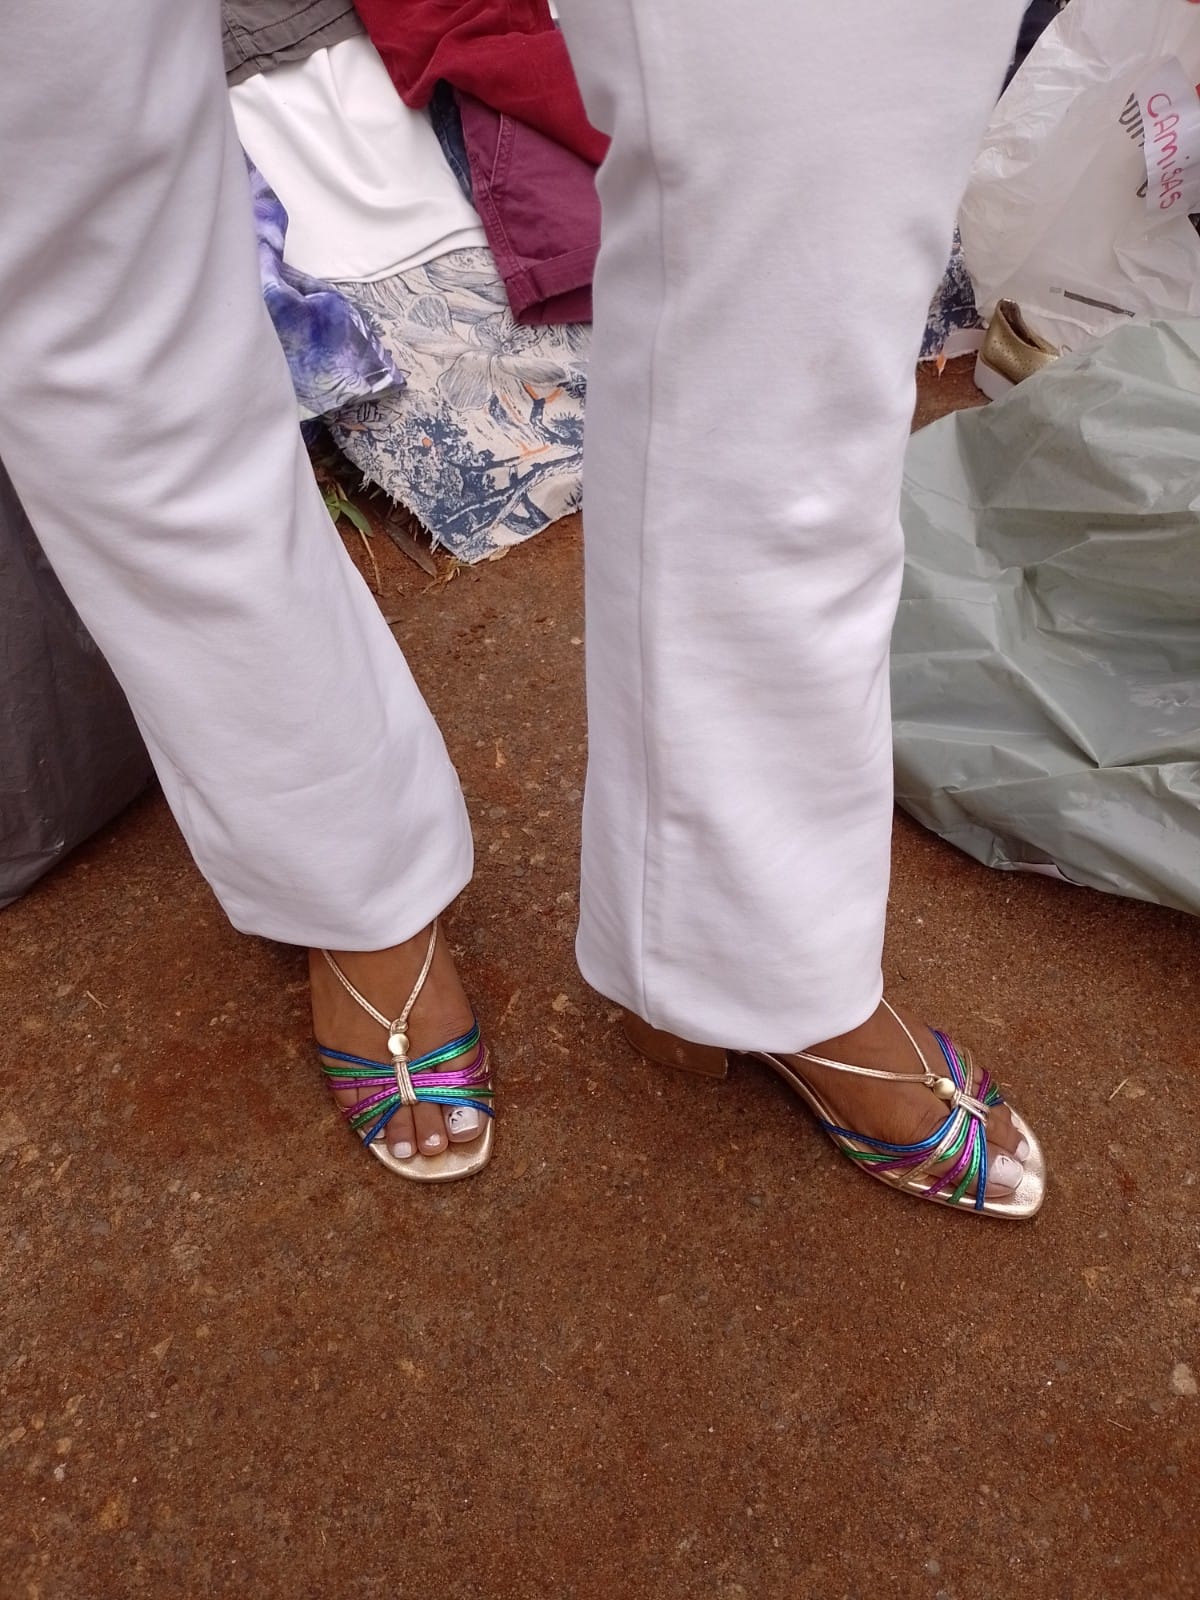 Pernas com calça branca e uma sandália colorida